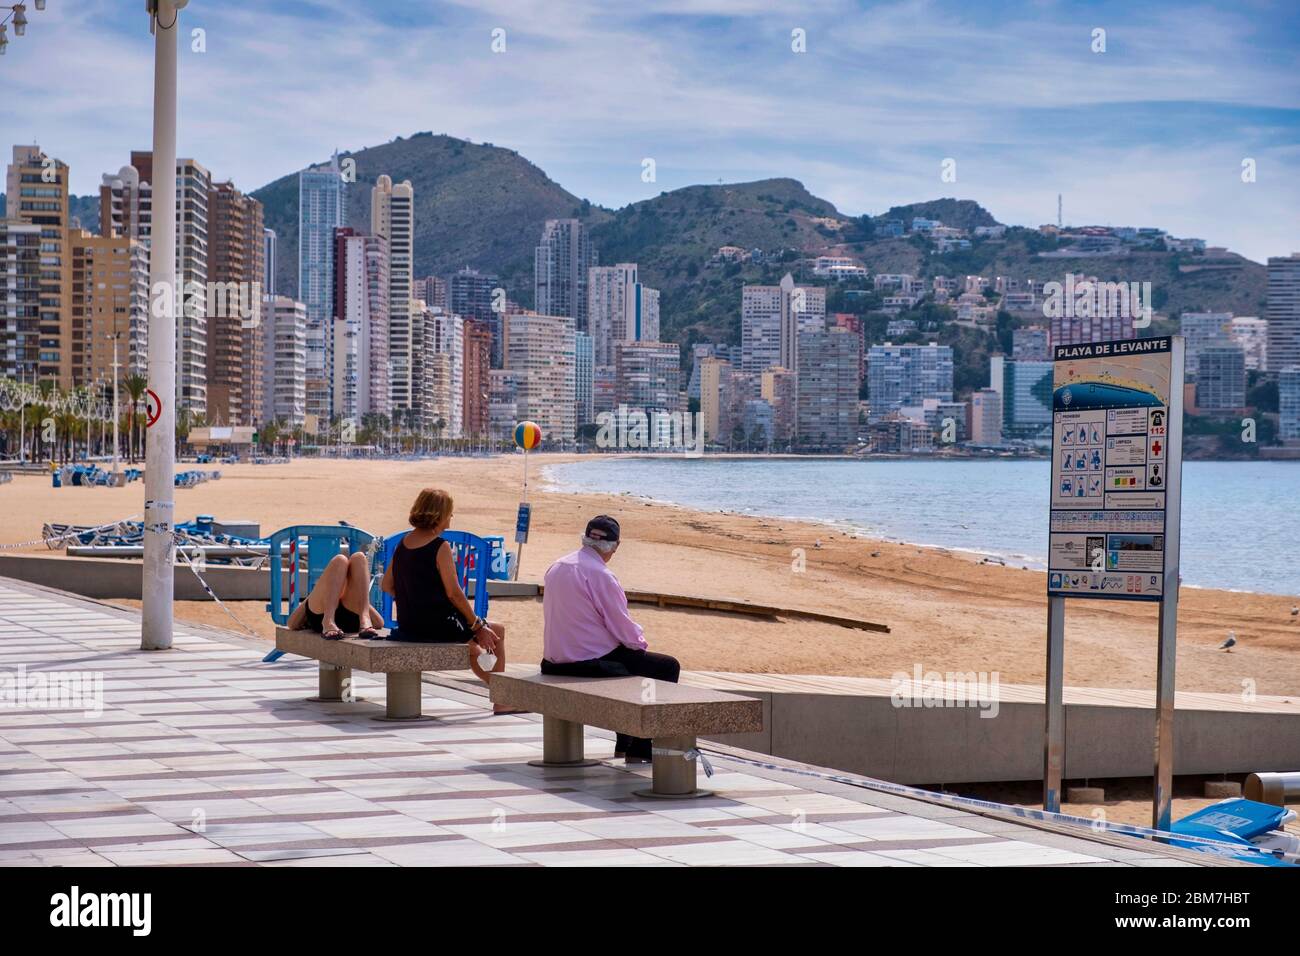 Benidorm, Alicante Spanien, 4.5.2020, Corona-Krise: Drei Leute sitzen und liegen auf Steinbänken an der Promenade am menschenleeren Strand Playa Levante Stockfoto